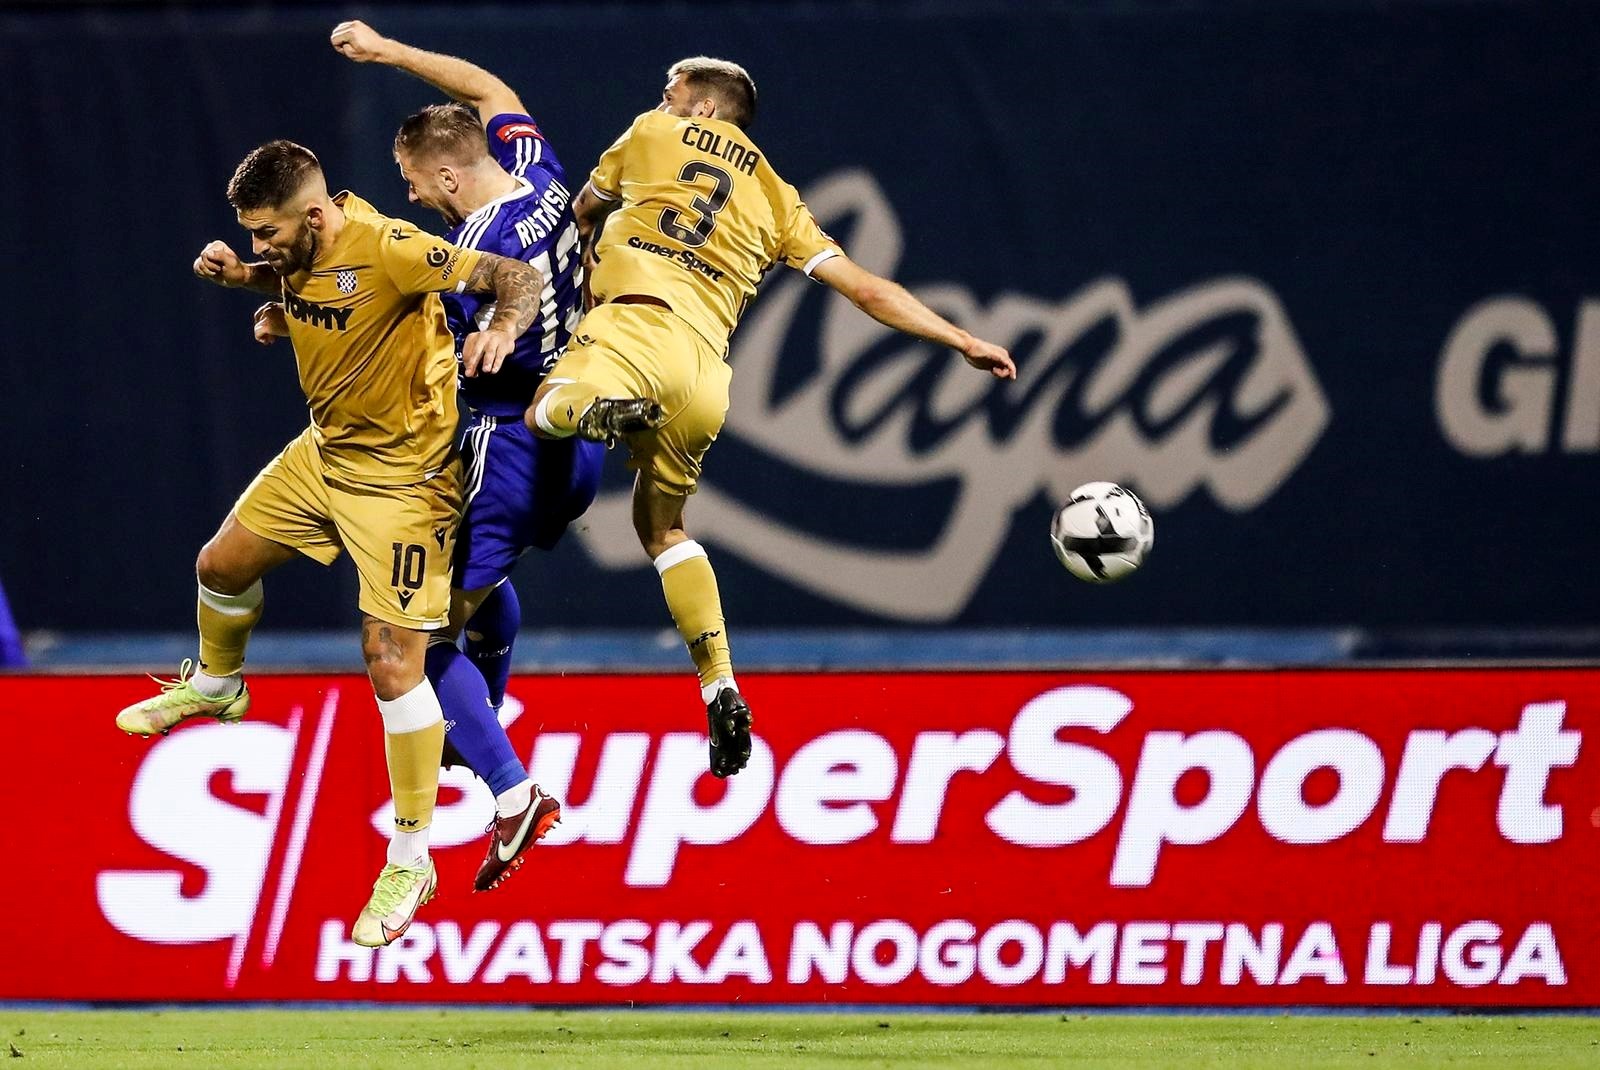 Zagreb: Dinamo (Z) - Hajduk 0:0 (4:1) • HNK Hajduk Split